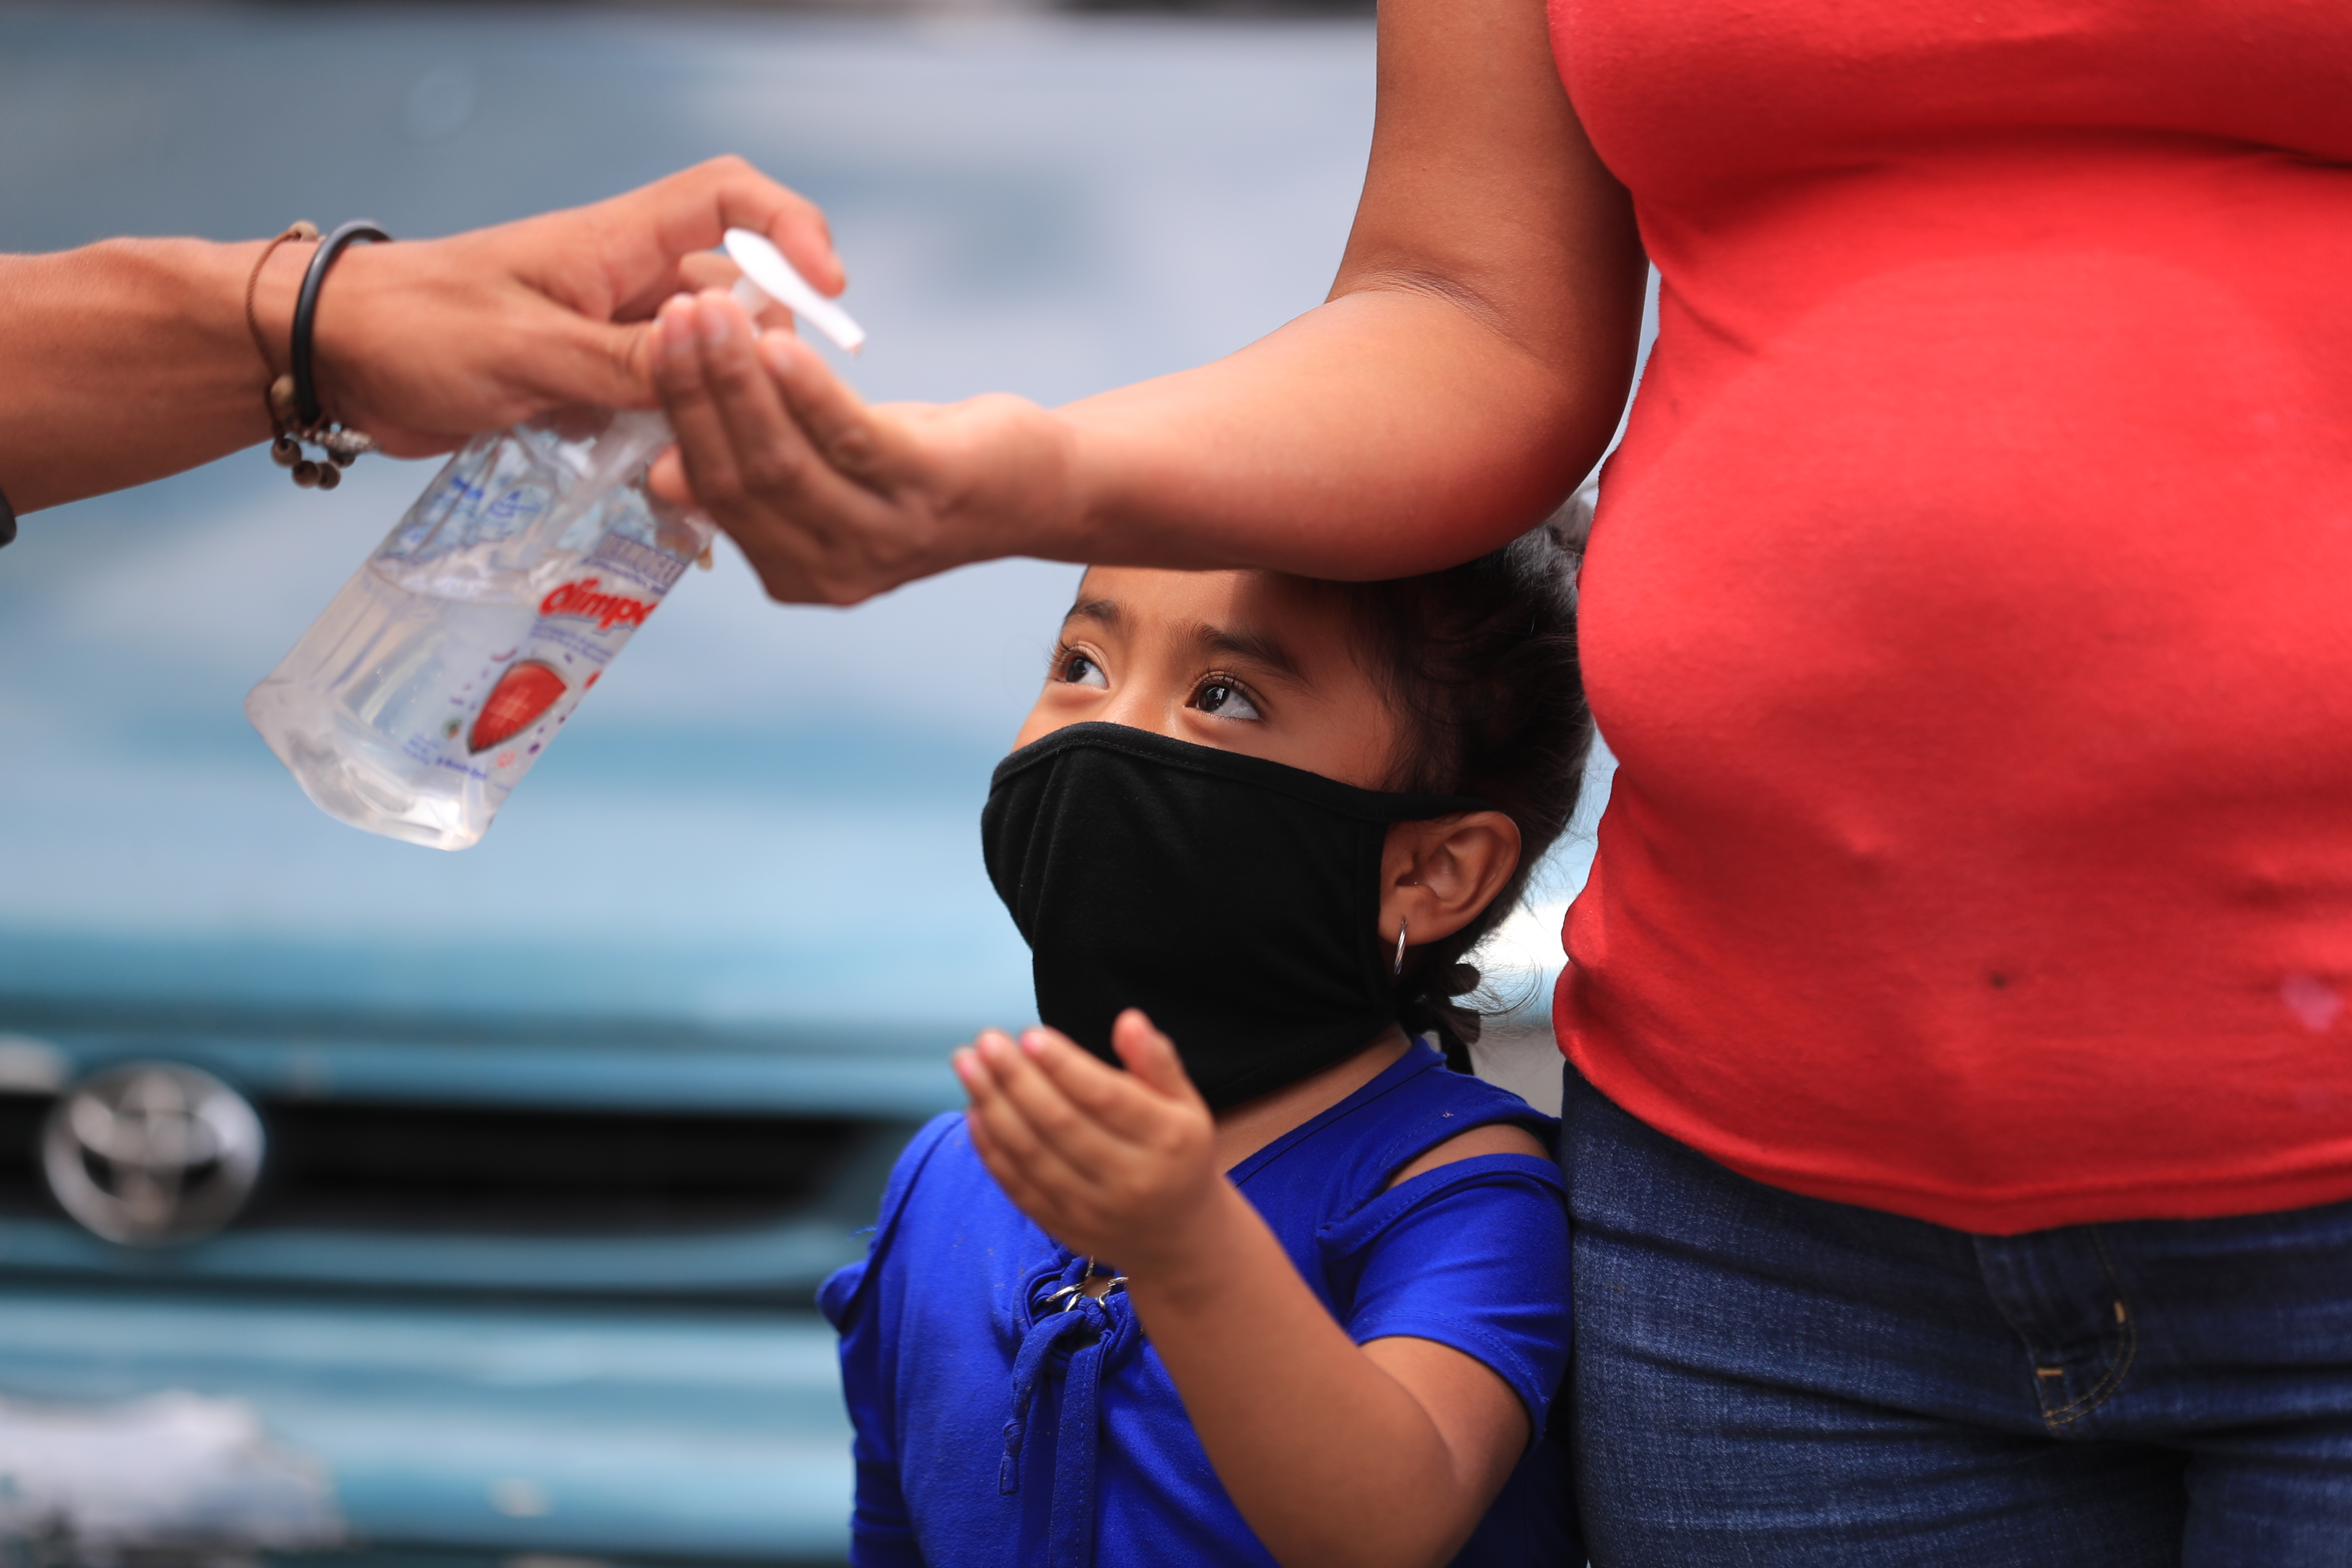 La población ha adoptado más medidas de prevención conforme crece el número de contagios. (Foto Prensa Libre: Juan Diego González)